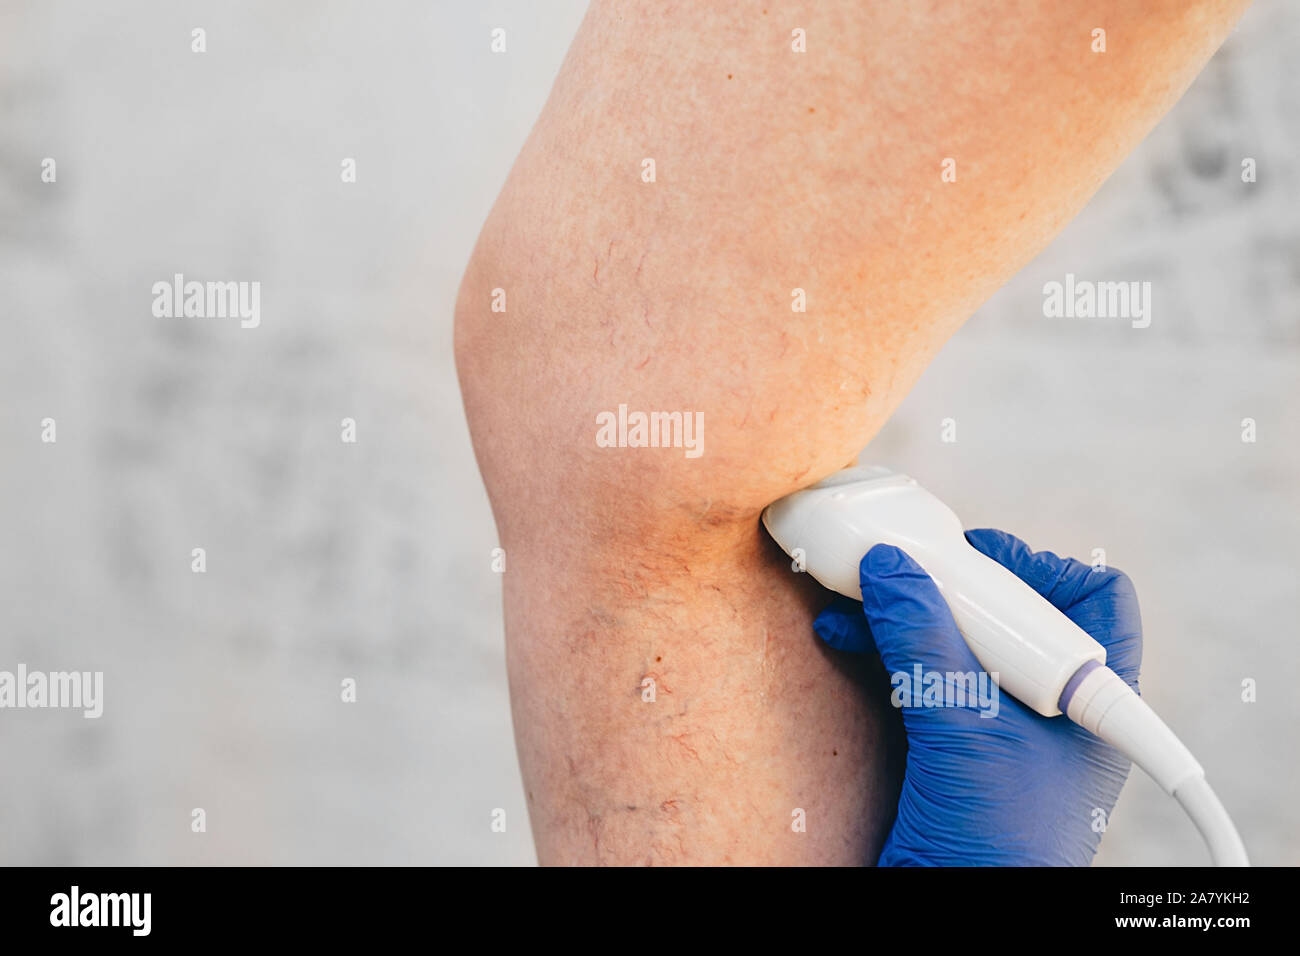 L'examen échographique recadrée nervures de la jambe, thromboses veineuses, varices Banque D'Images